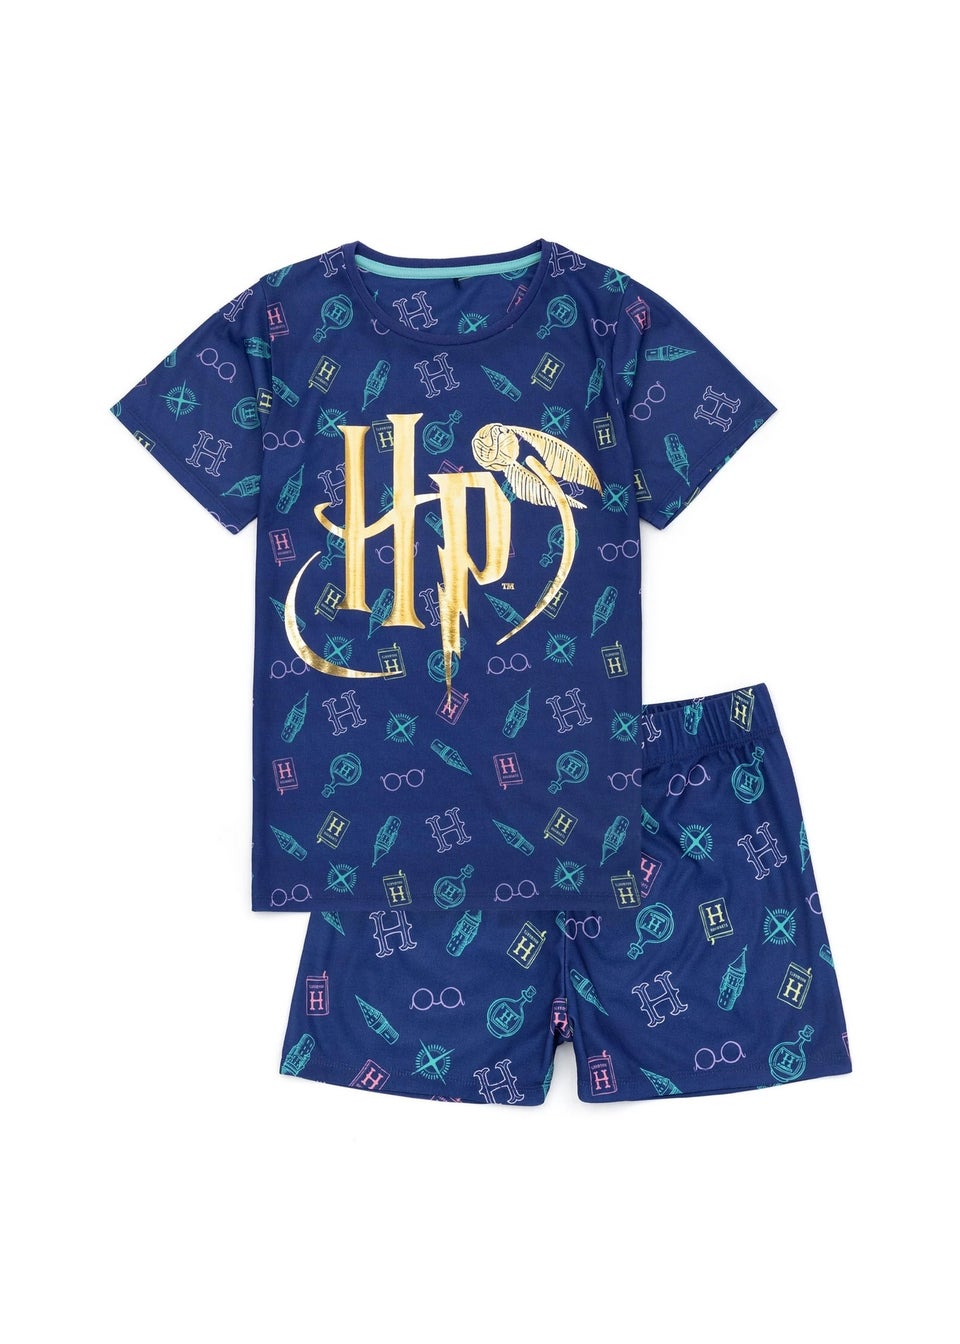 Harry Potter Kids Blue Short Pyjama Set (5-14yrs)